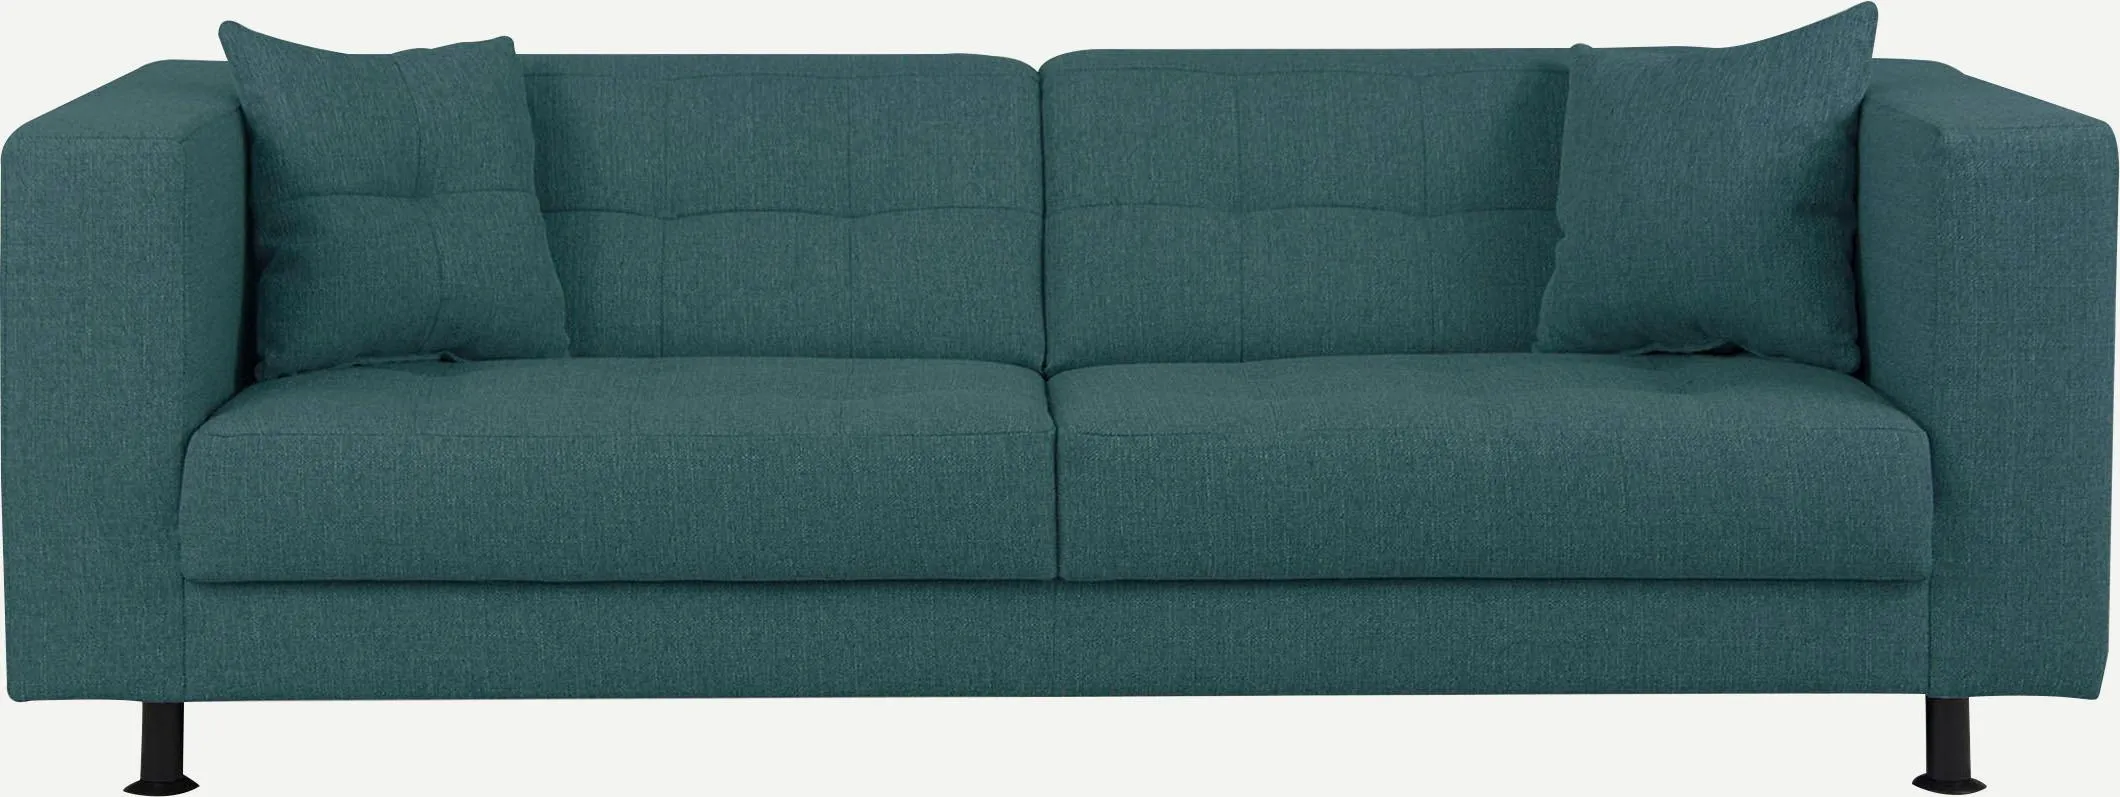 3-Sitzer INOSIGN "Bengo" Sofas Gr. B/H/T: 202 cm x 68 cm x 88 cm, Struktur, blau (petrol) 3-Sitzer Sofas mit Steppung im Sitz- und Rückenbereich, incl. Zierkissen